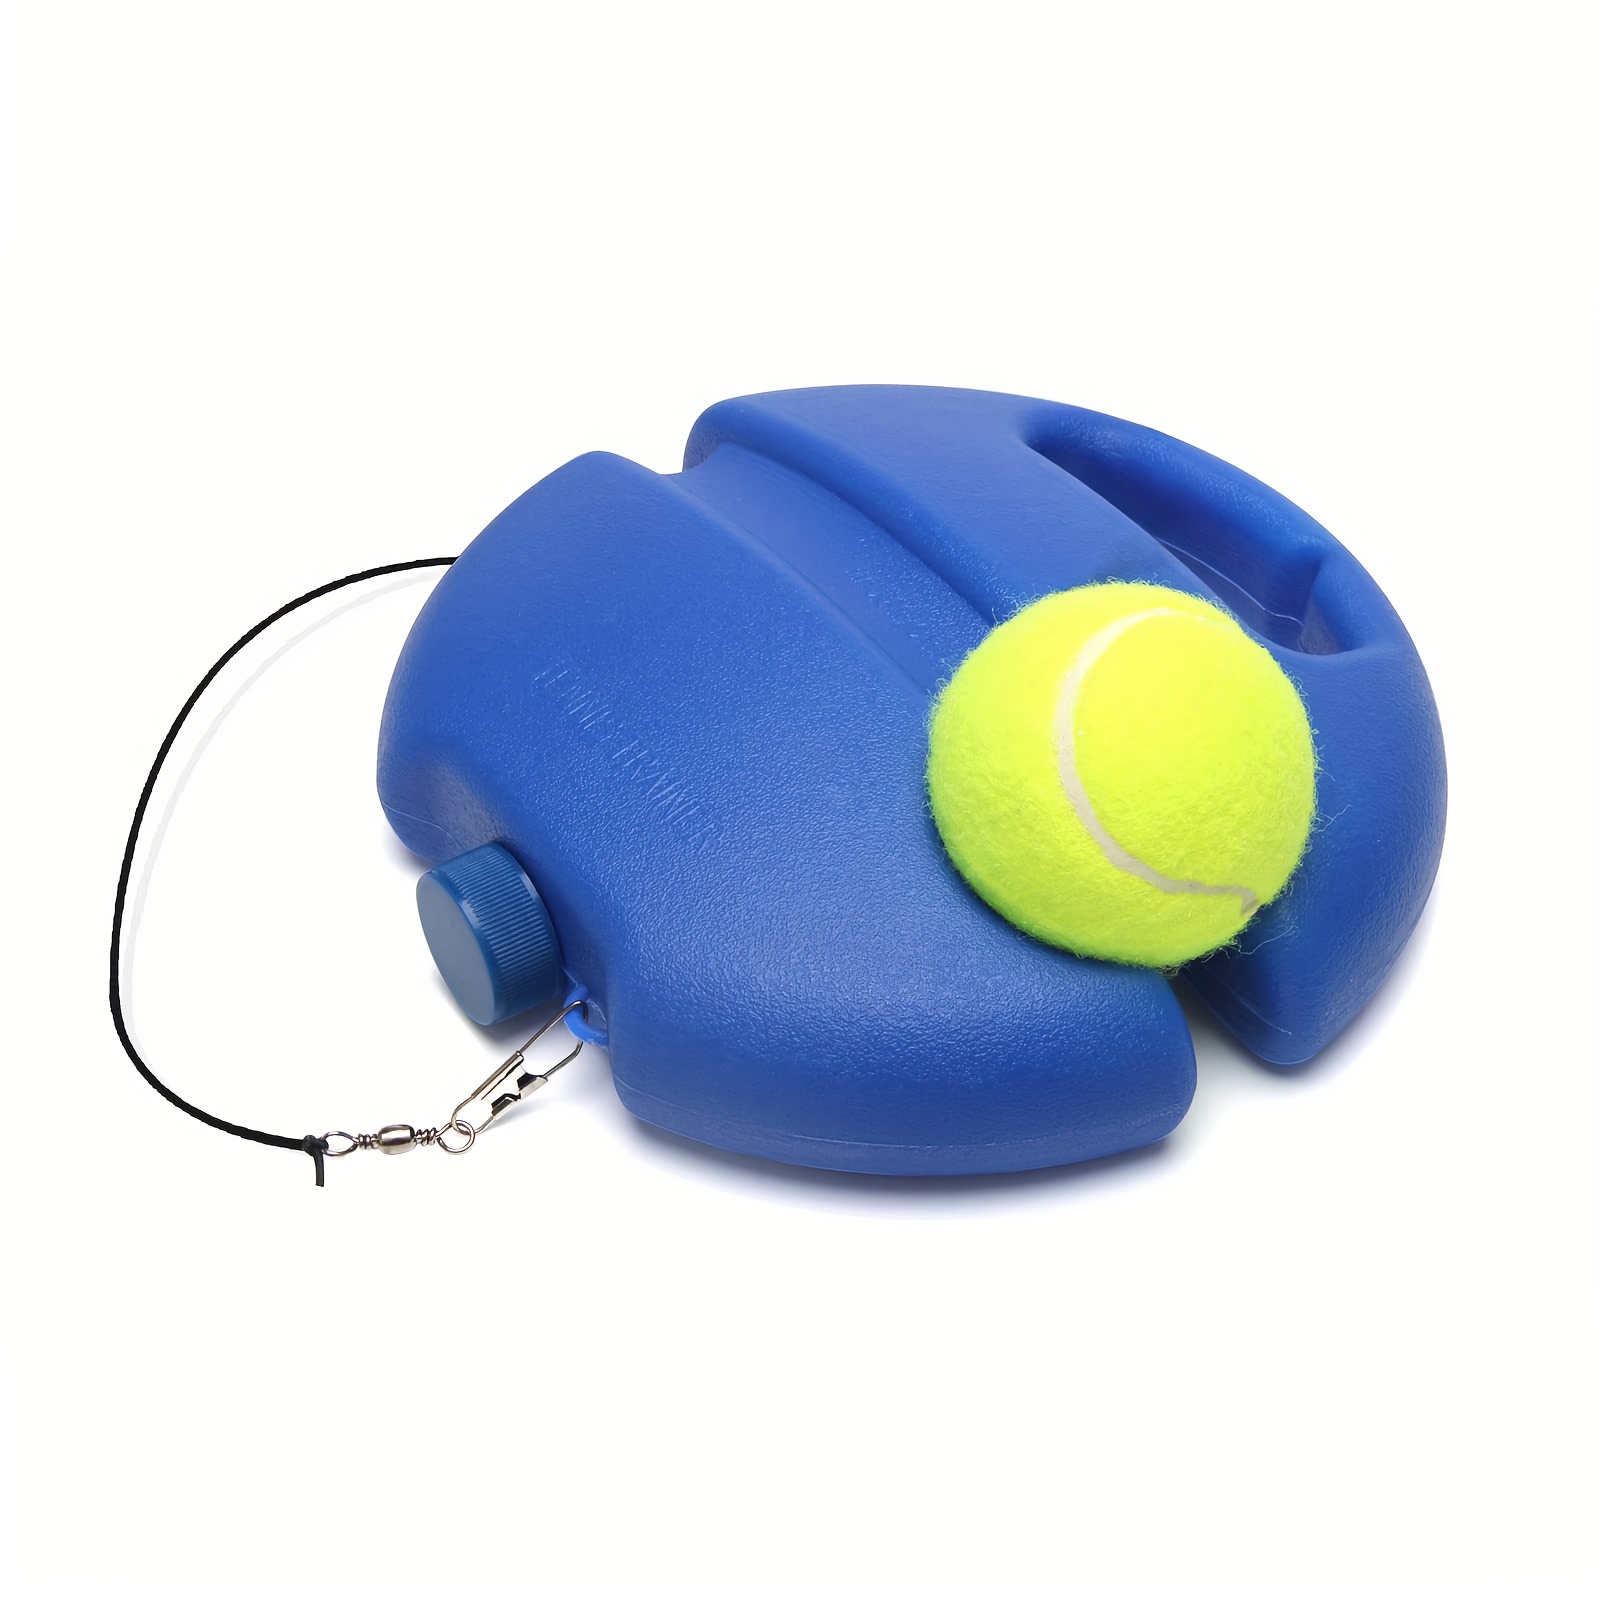 Tennis Trainer Single Tennis Practice Device Rebound String - Temu